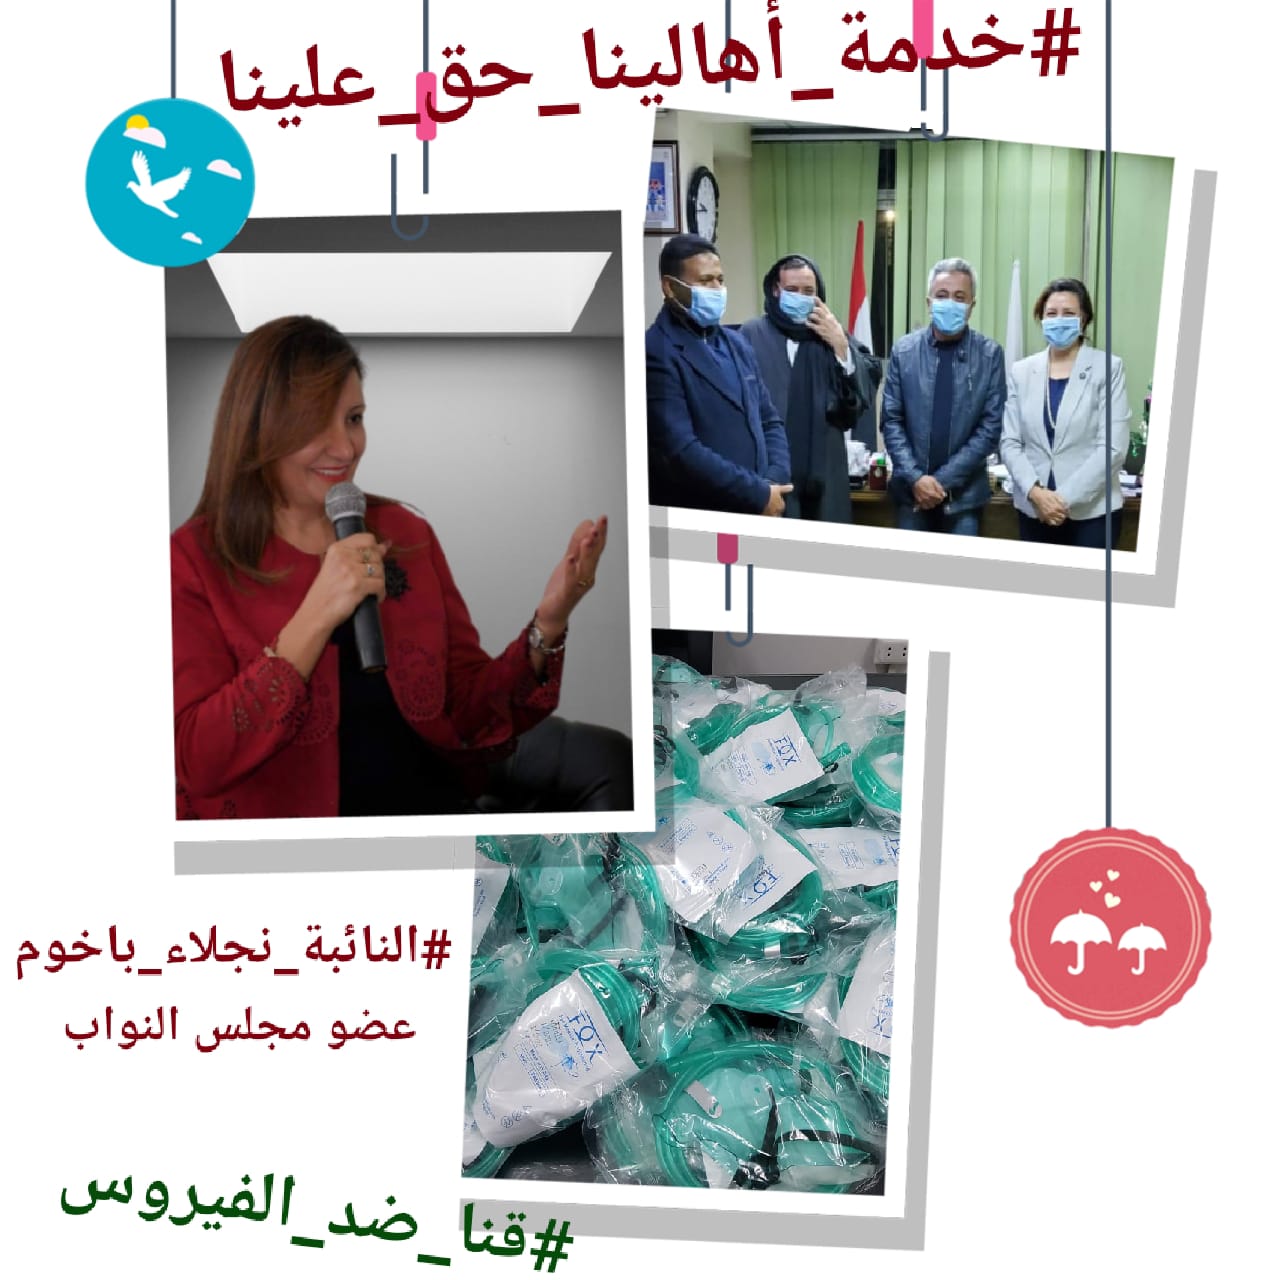   نجلاء باخوم تطلق مبادرة من الناس للناس بقنا 